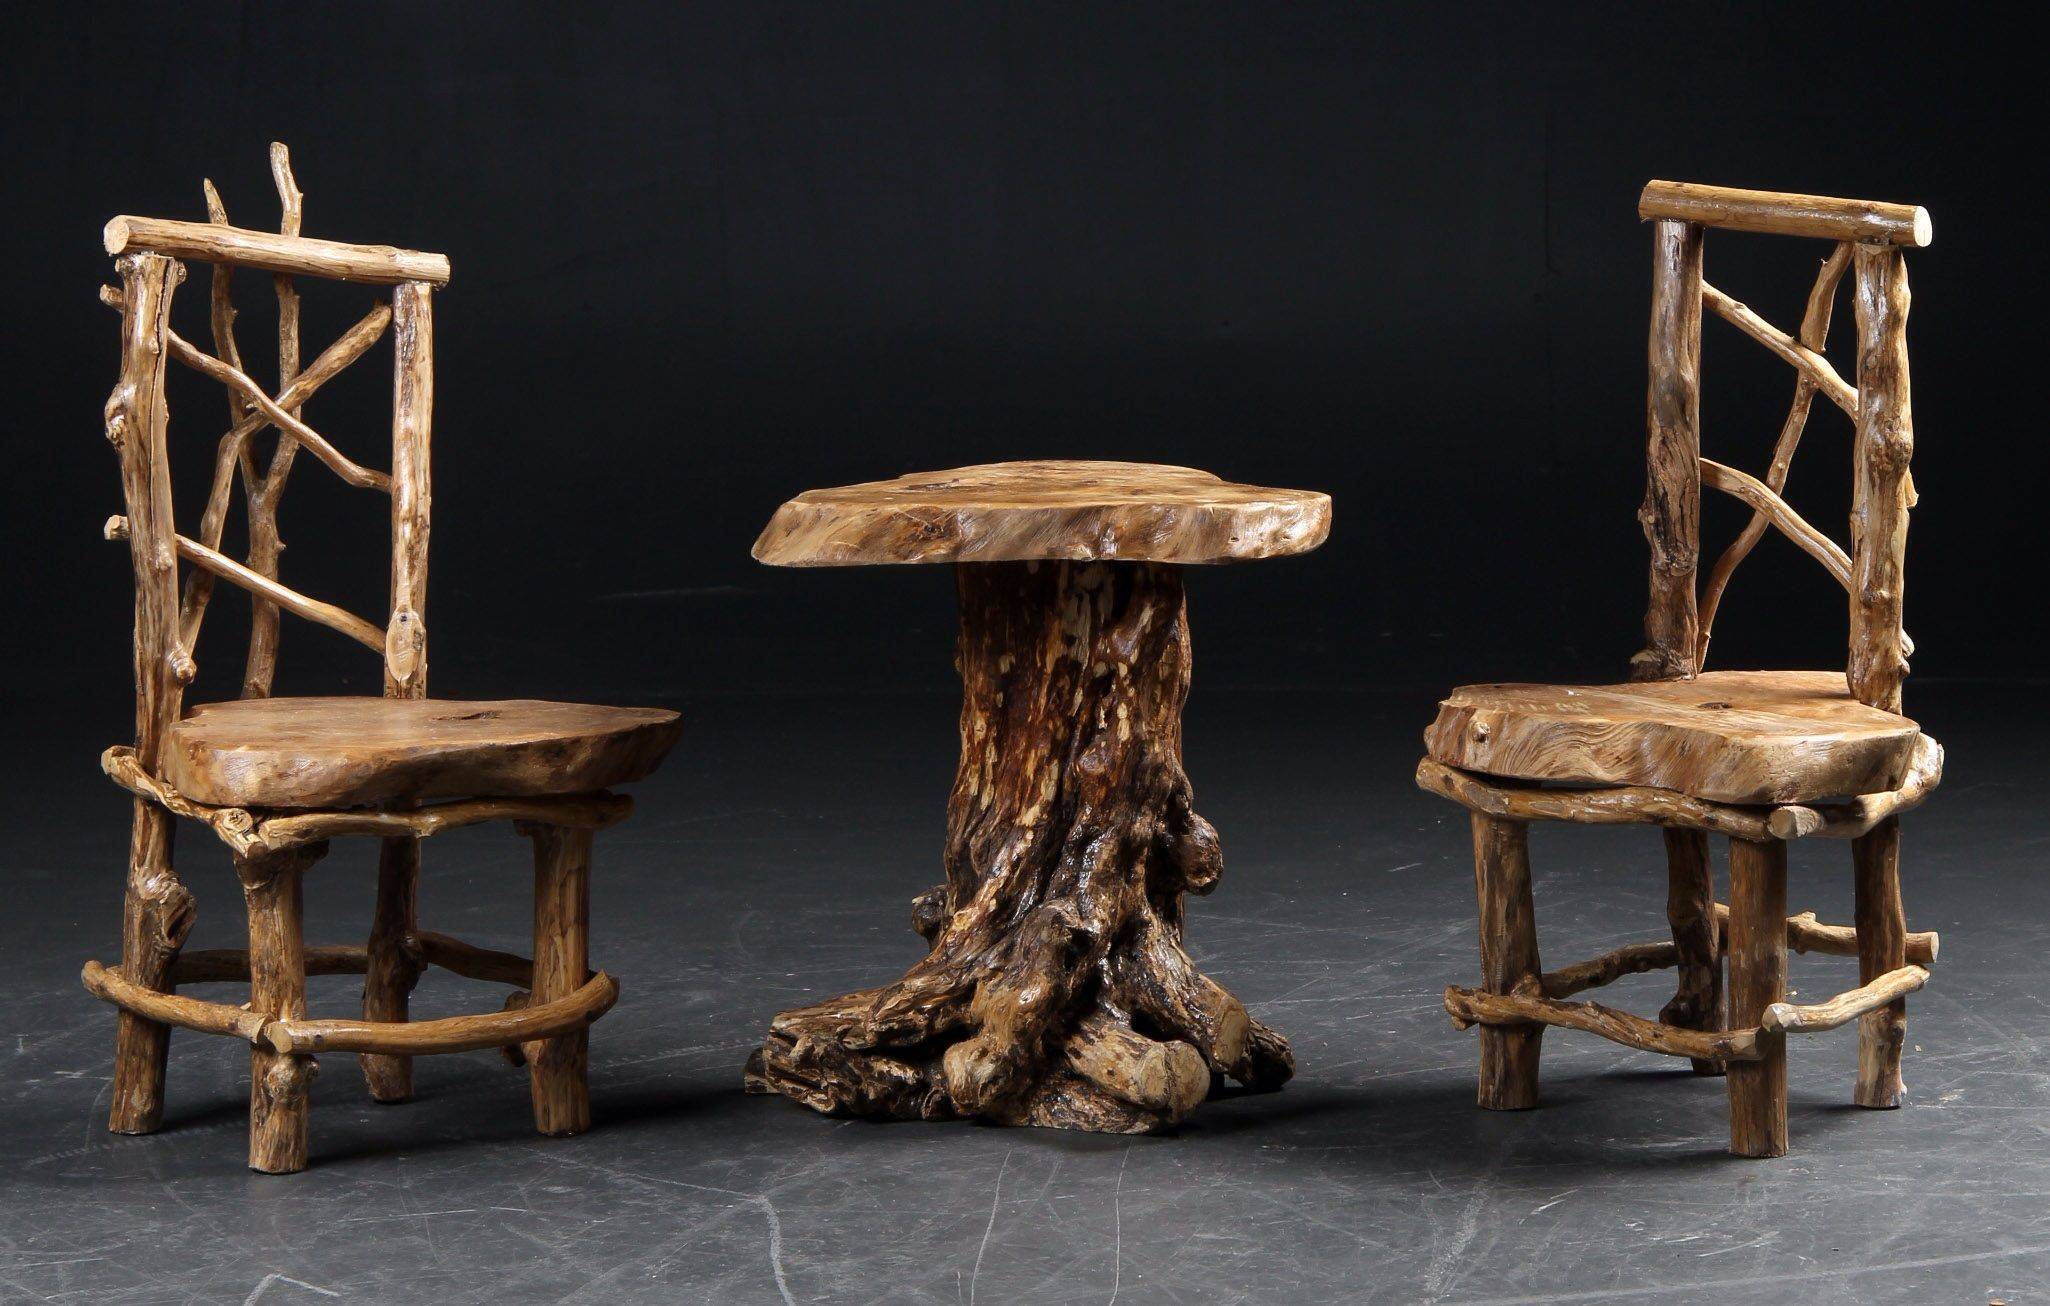 Мебель из натурального дерева своими руками: пошаговые мастер-классы